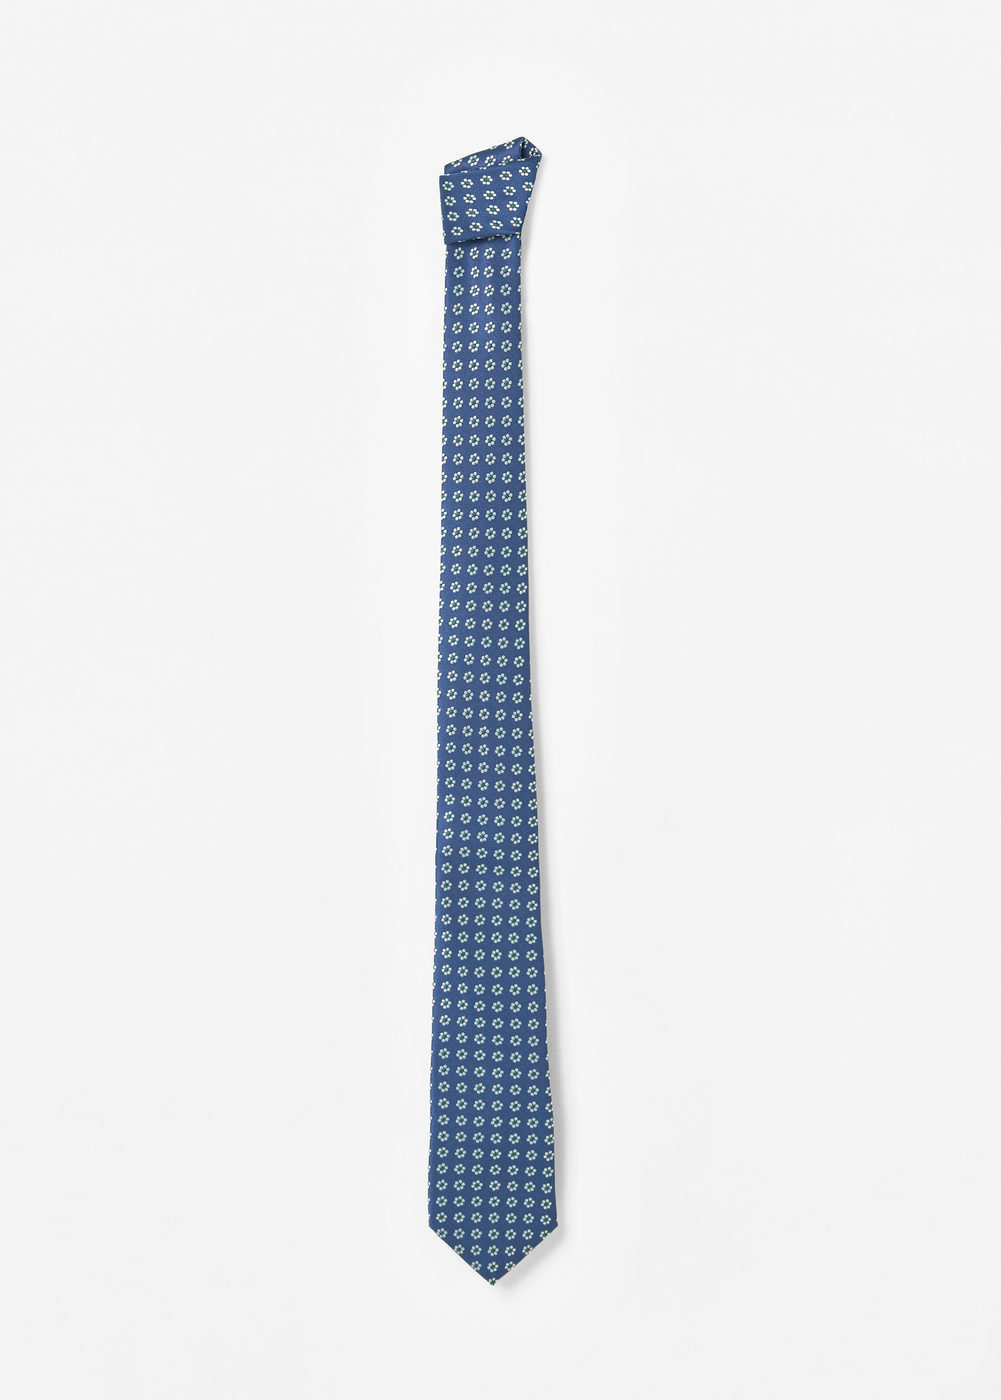 Mango virágos nyakkendő 2016.12.22 fotója